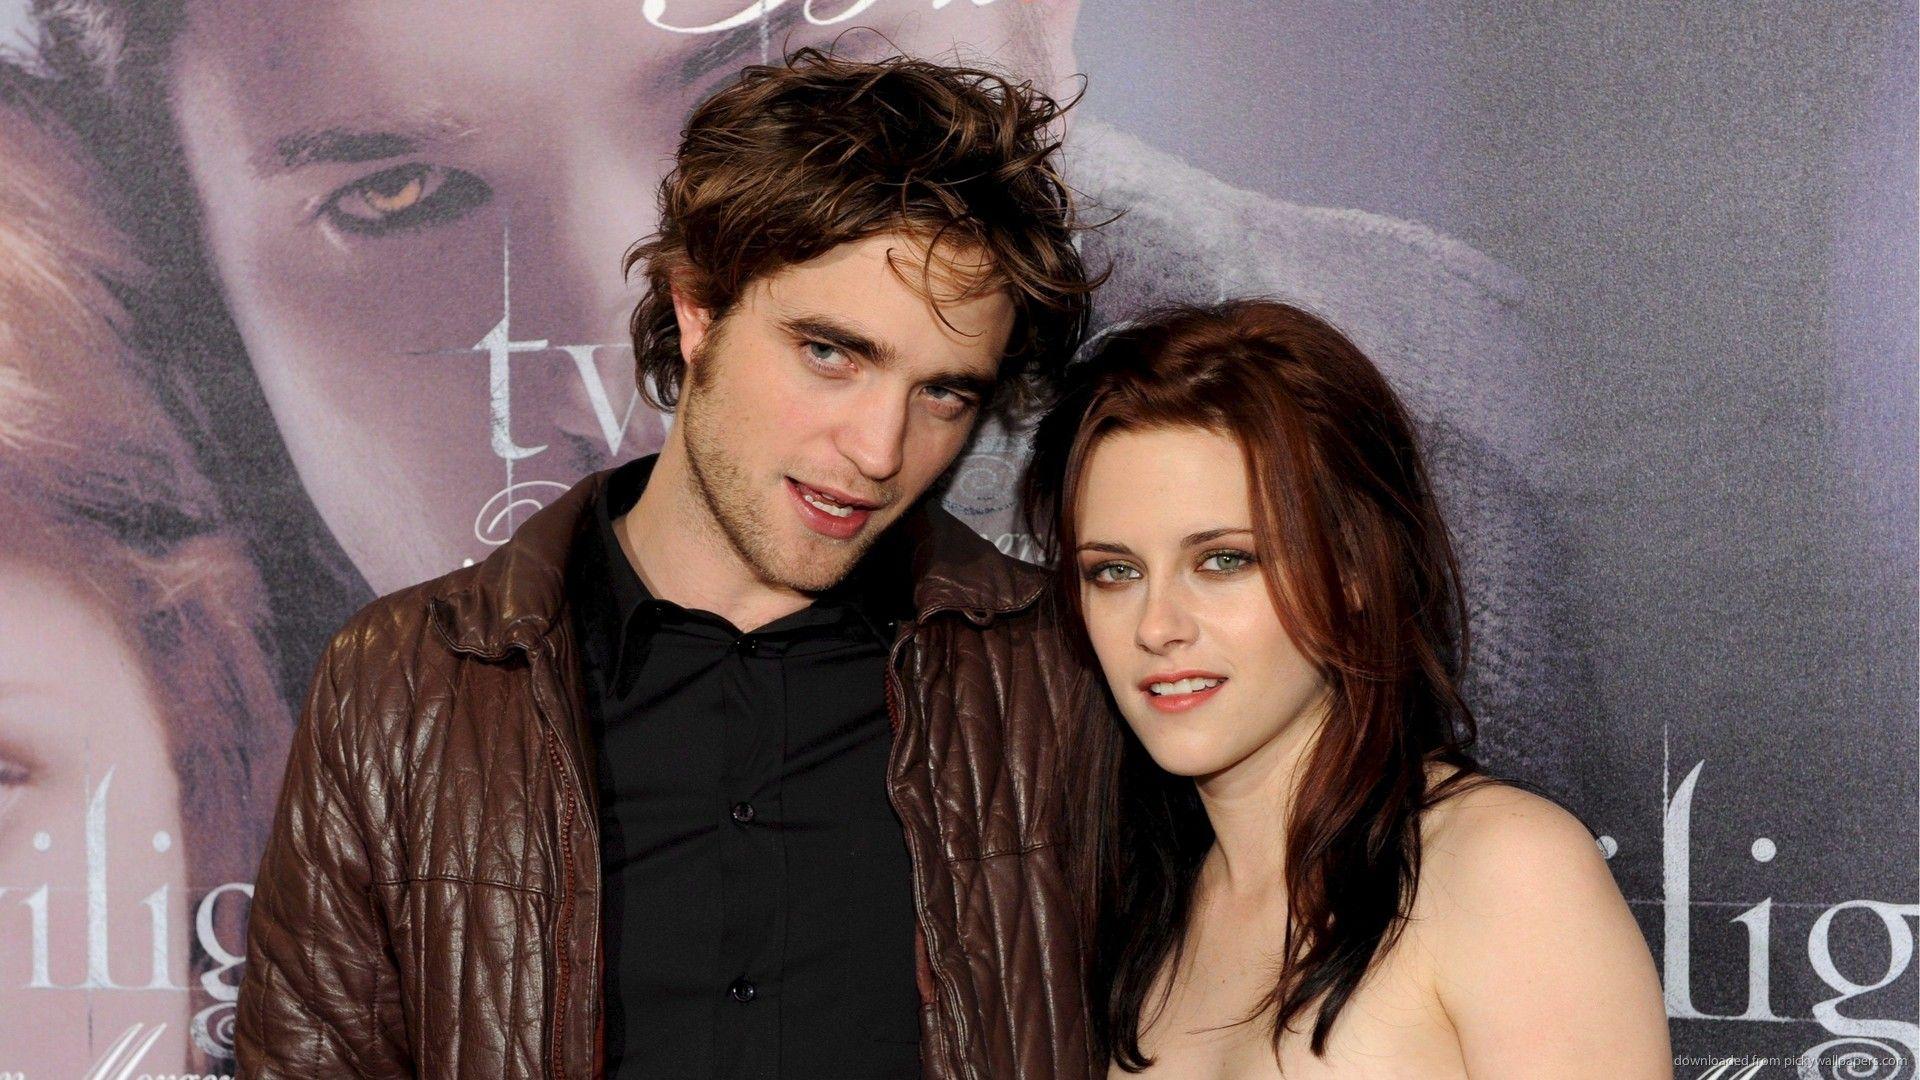 Cute Couple. Couples, Twilight saga and Saga